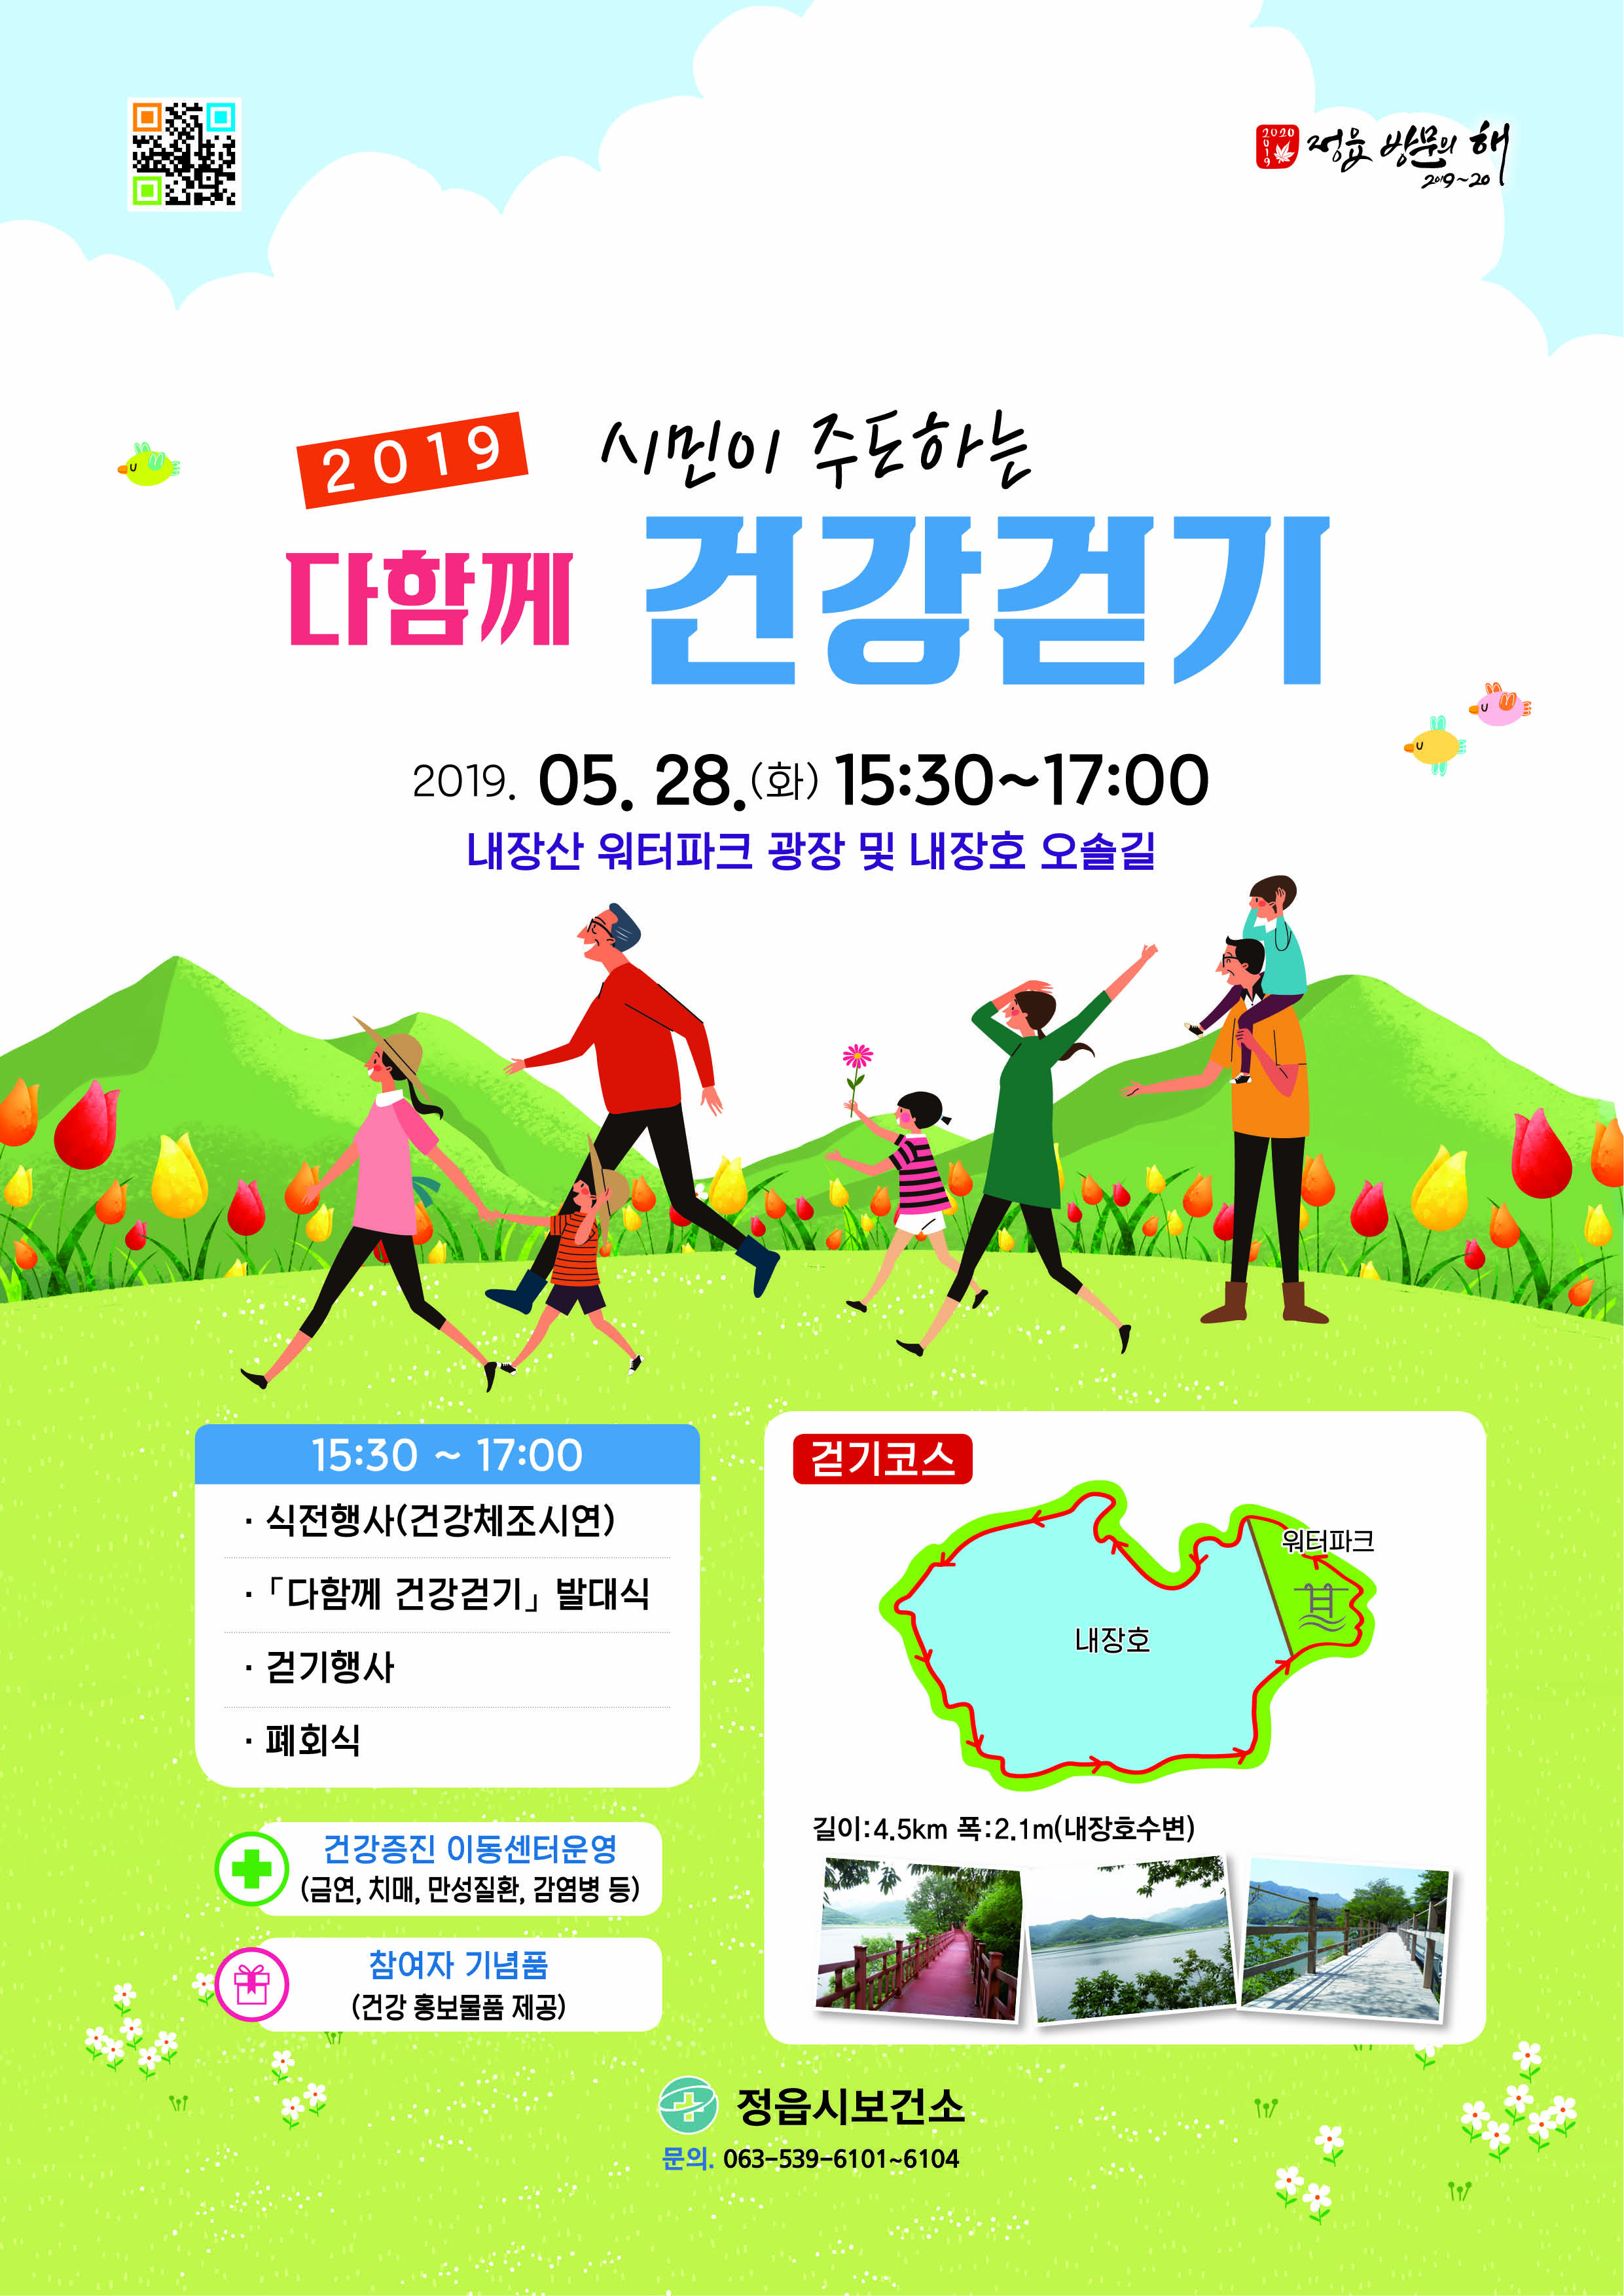 시민이 주도하는 다함께 건강 걷기 발대식 및 건강걷기 행사 개최